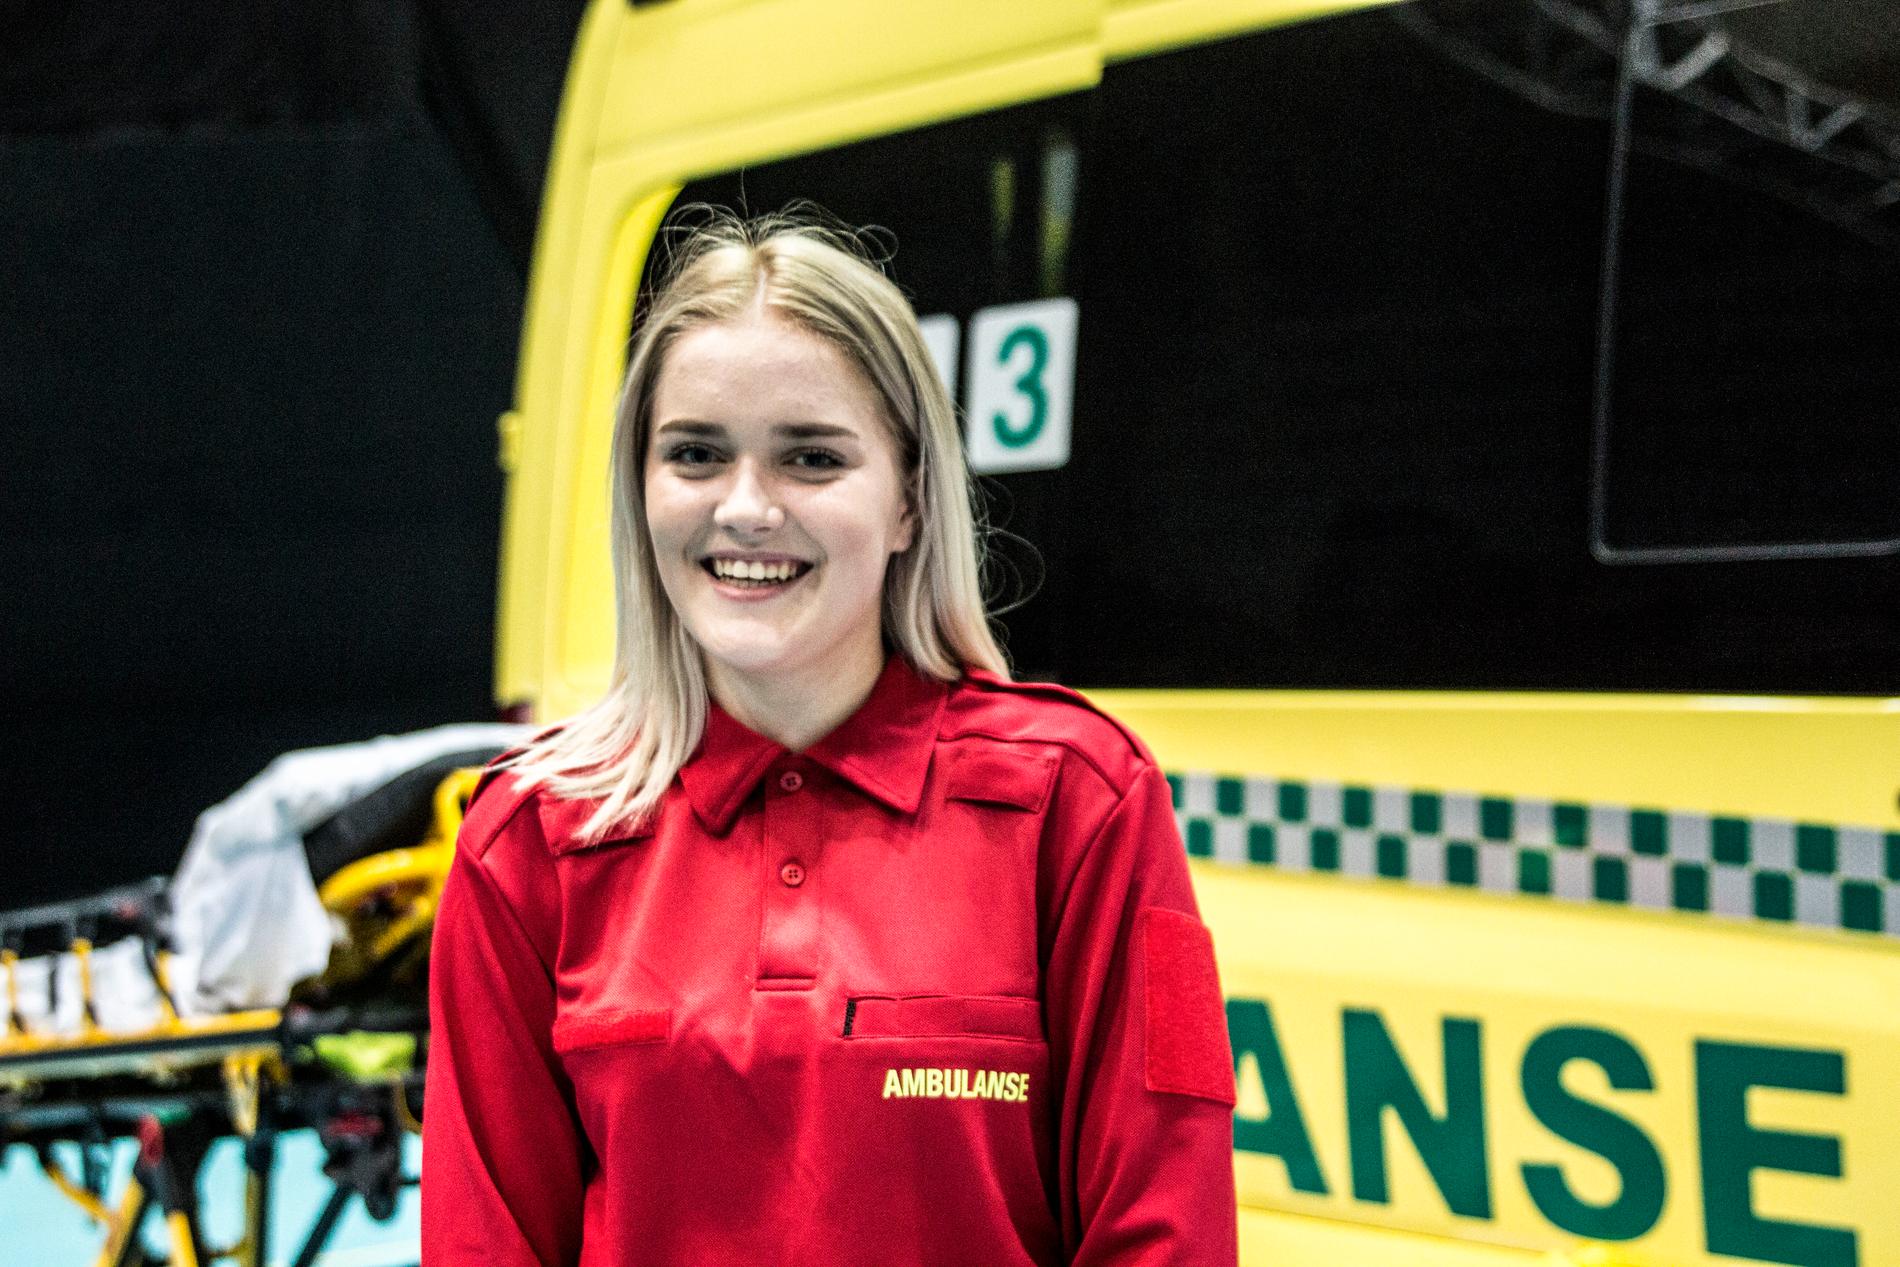 Kristiansandsjenta Silje Vigebo (18) er elev på ambulansefag på Møglestu videregående skole. Hun demonstrerte livredningsteknikker for de fremmøtte i Gimlehallen tirsdag ettermiddag. Foto: Kristian Hole